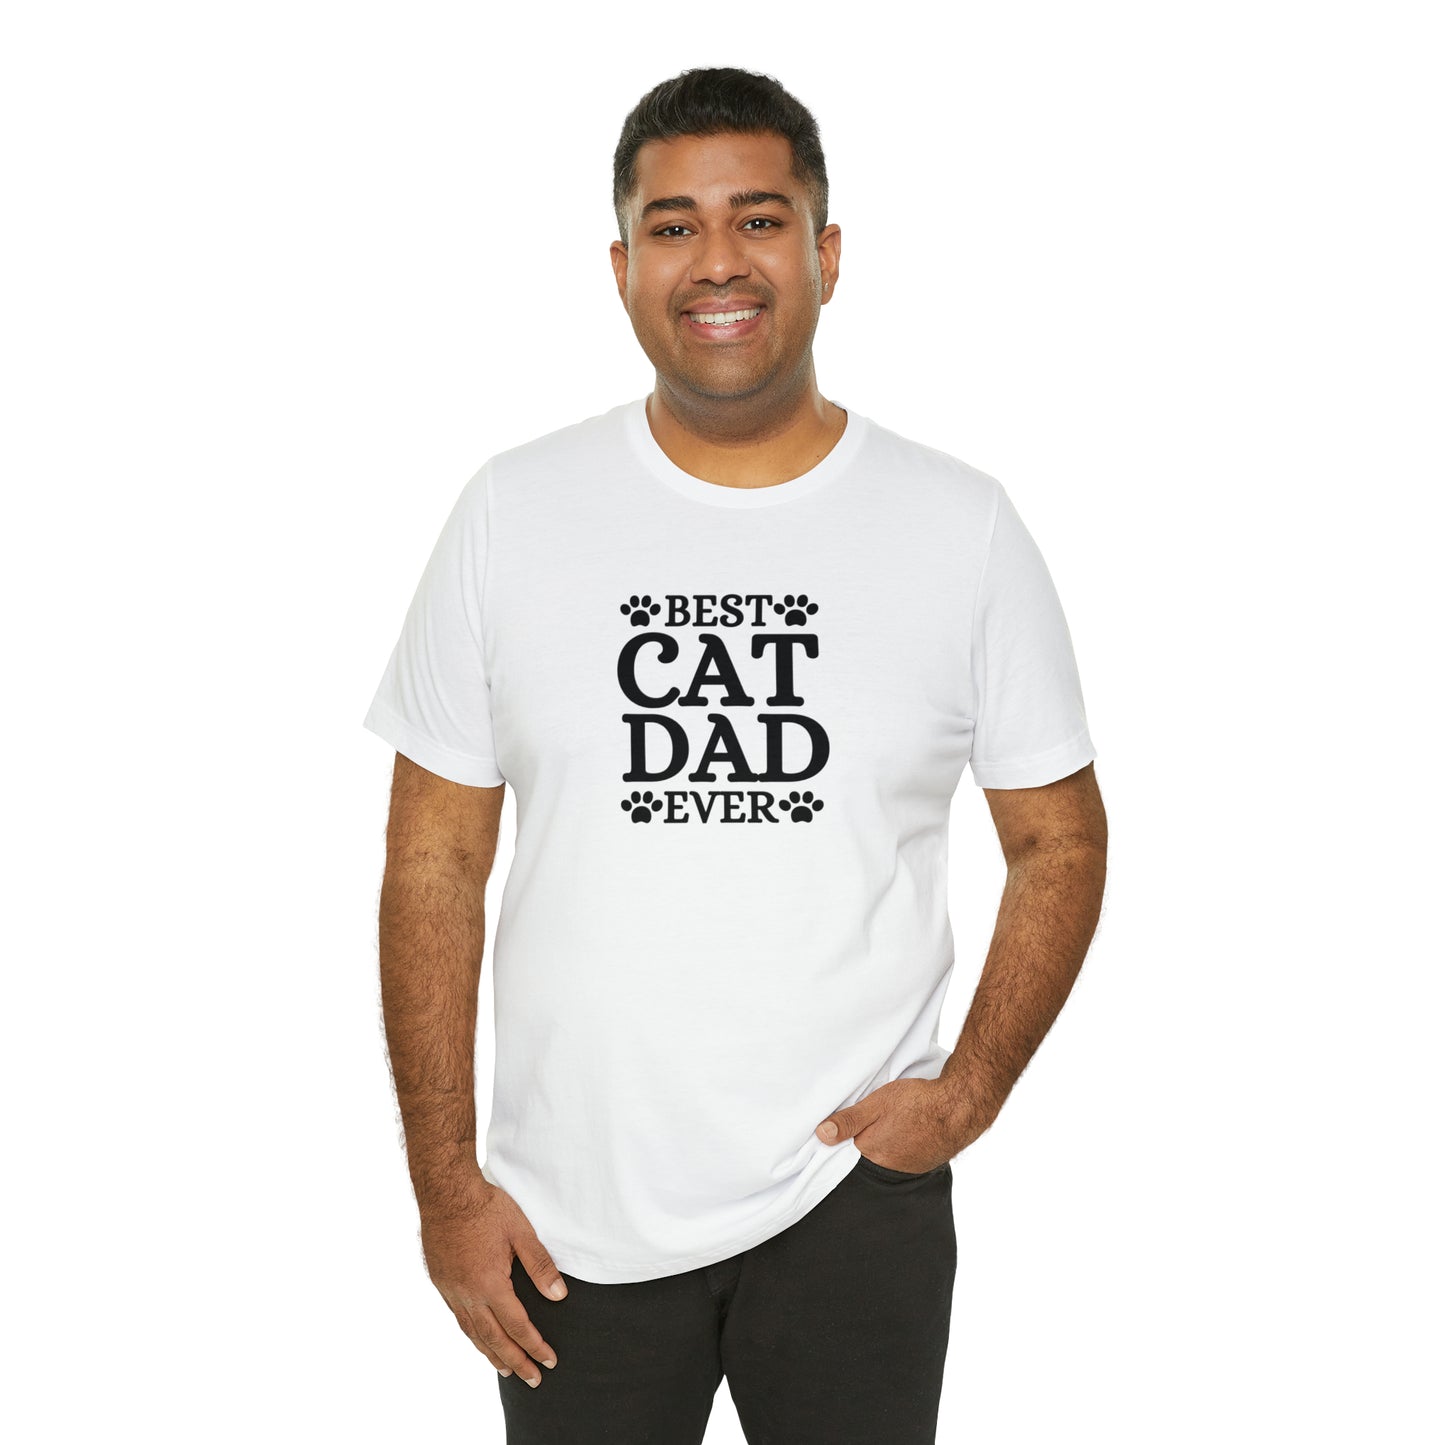 Best Cat Dad T-shirt | Cat Lover Shirt, Cat Father, Cat Dad, Cat Daddy T-shirt, Gift For Cat Dad